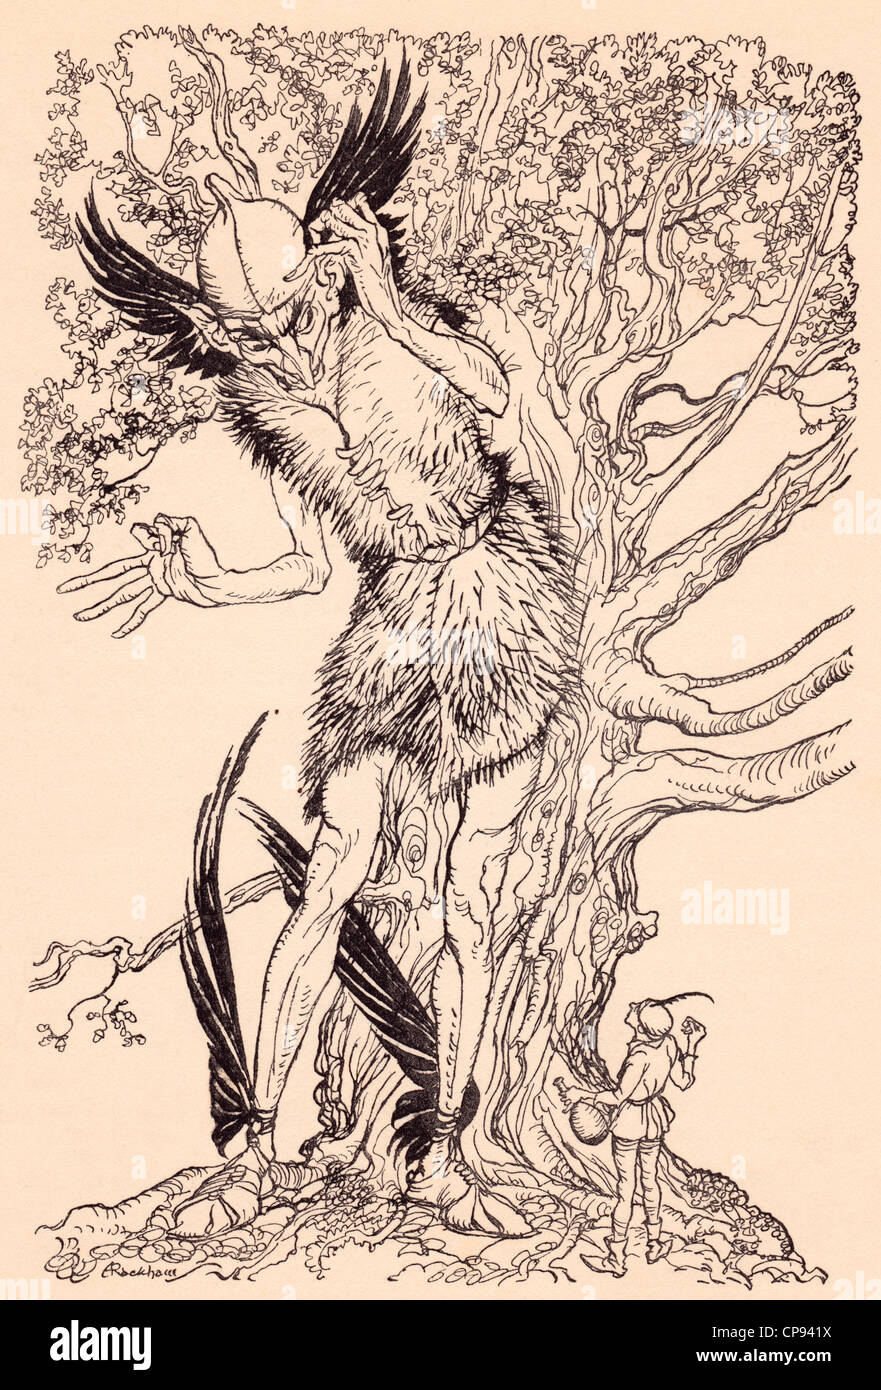 Un terrible d'autres à moitié aussi grand que l'arbre à côté duquel il se trouvait. Illustration par Arthur Rackham de conte de Grimm Banque D'Images